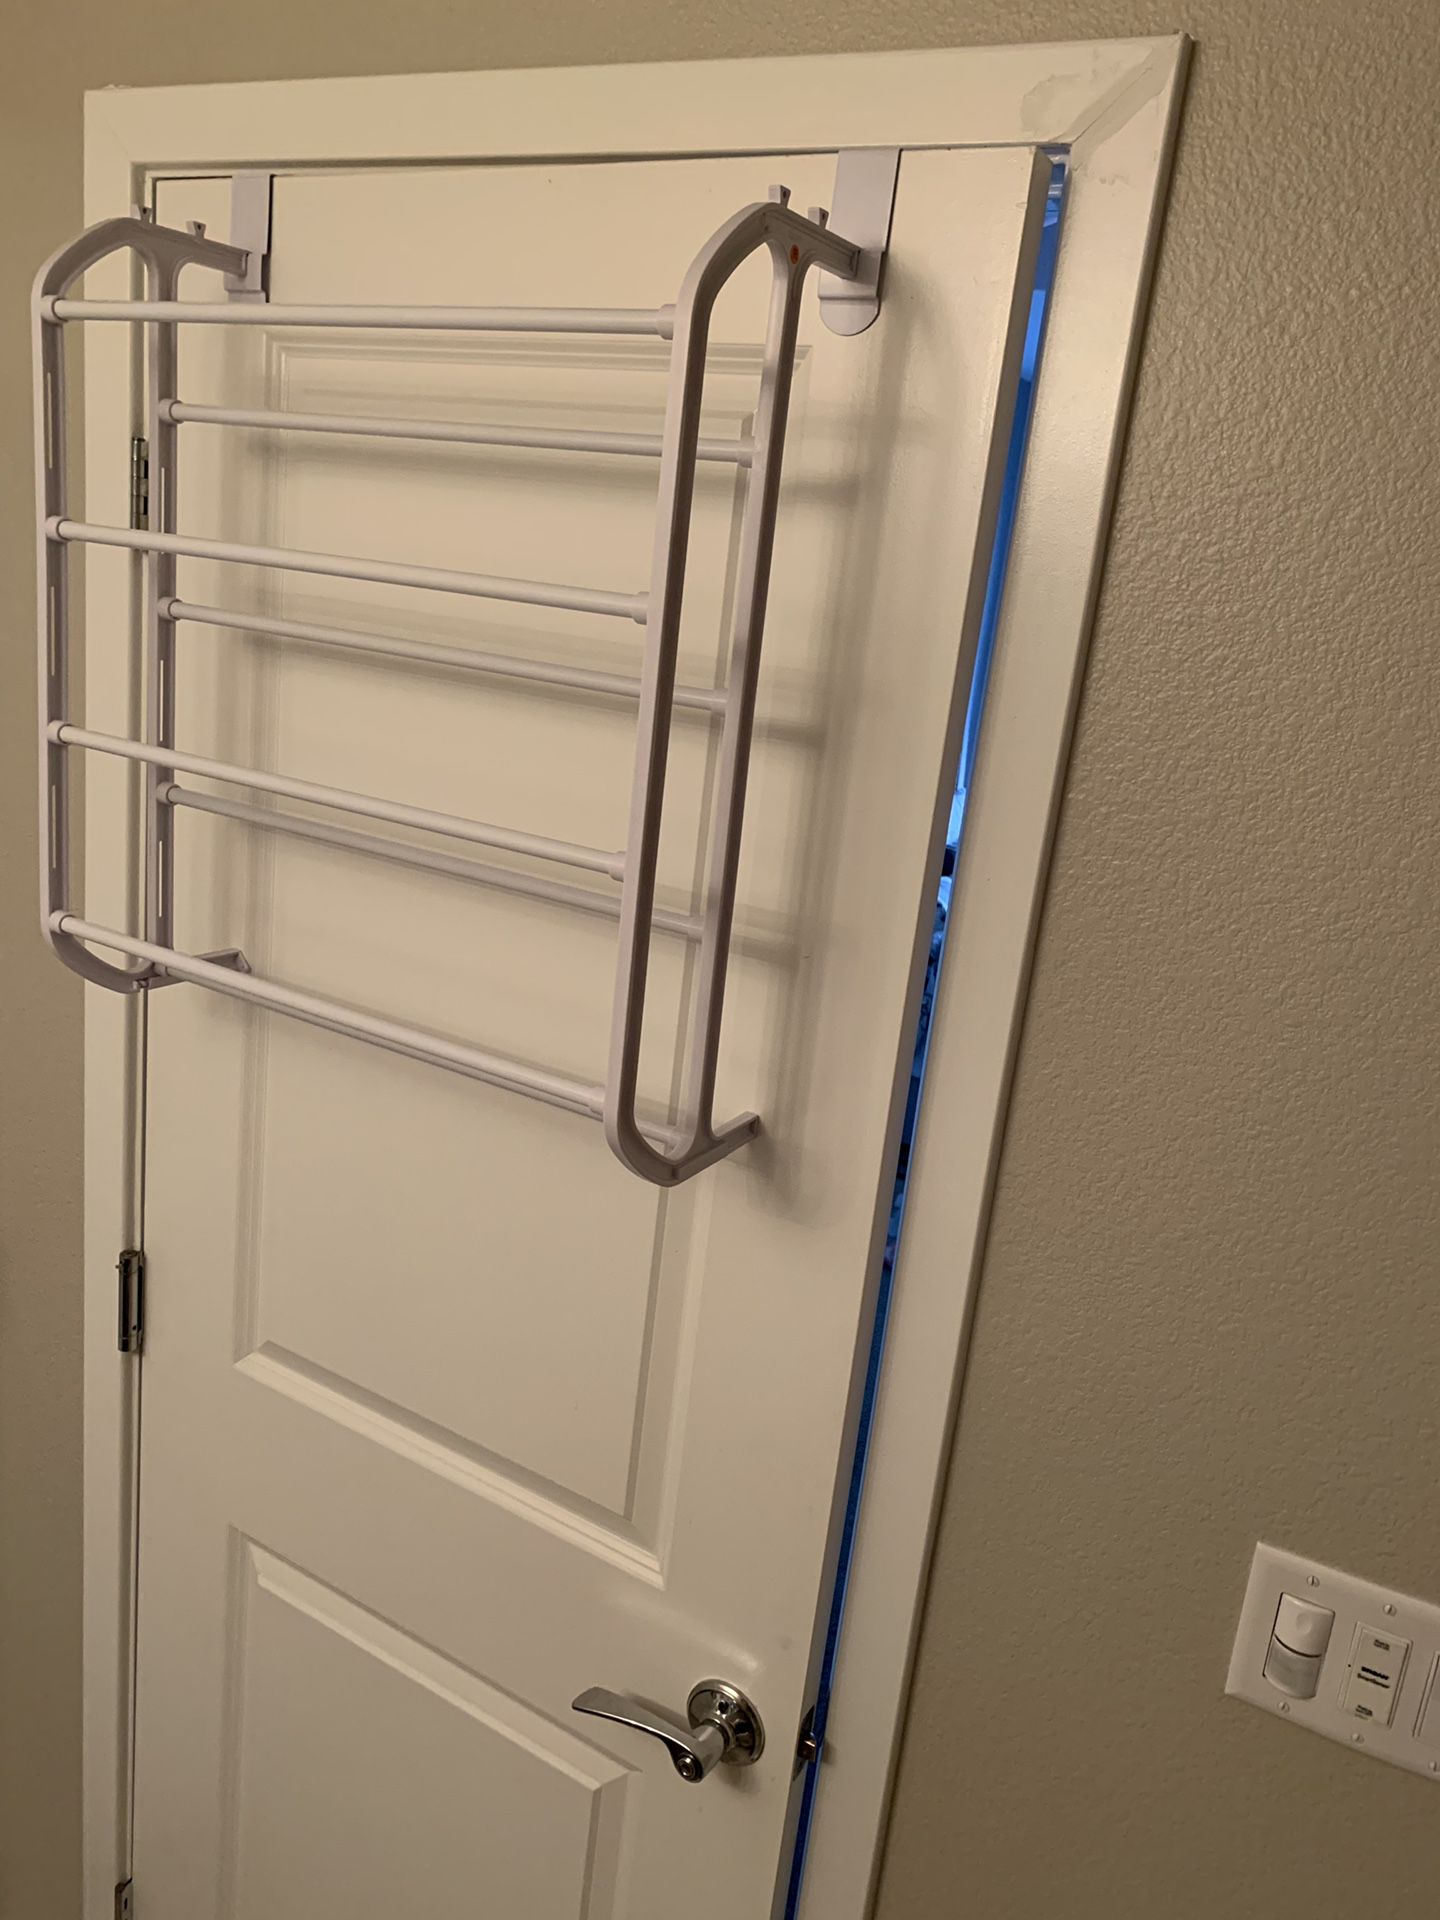 Shoe rack, towel rack over the door hanging